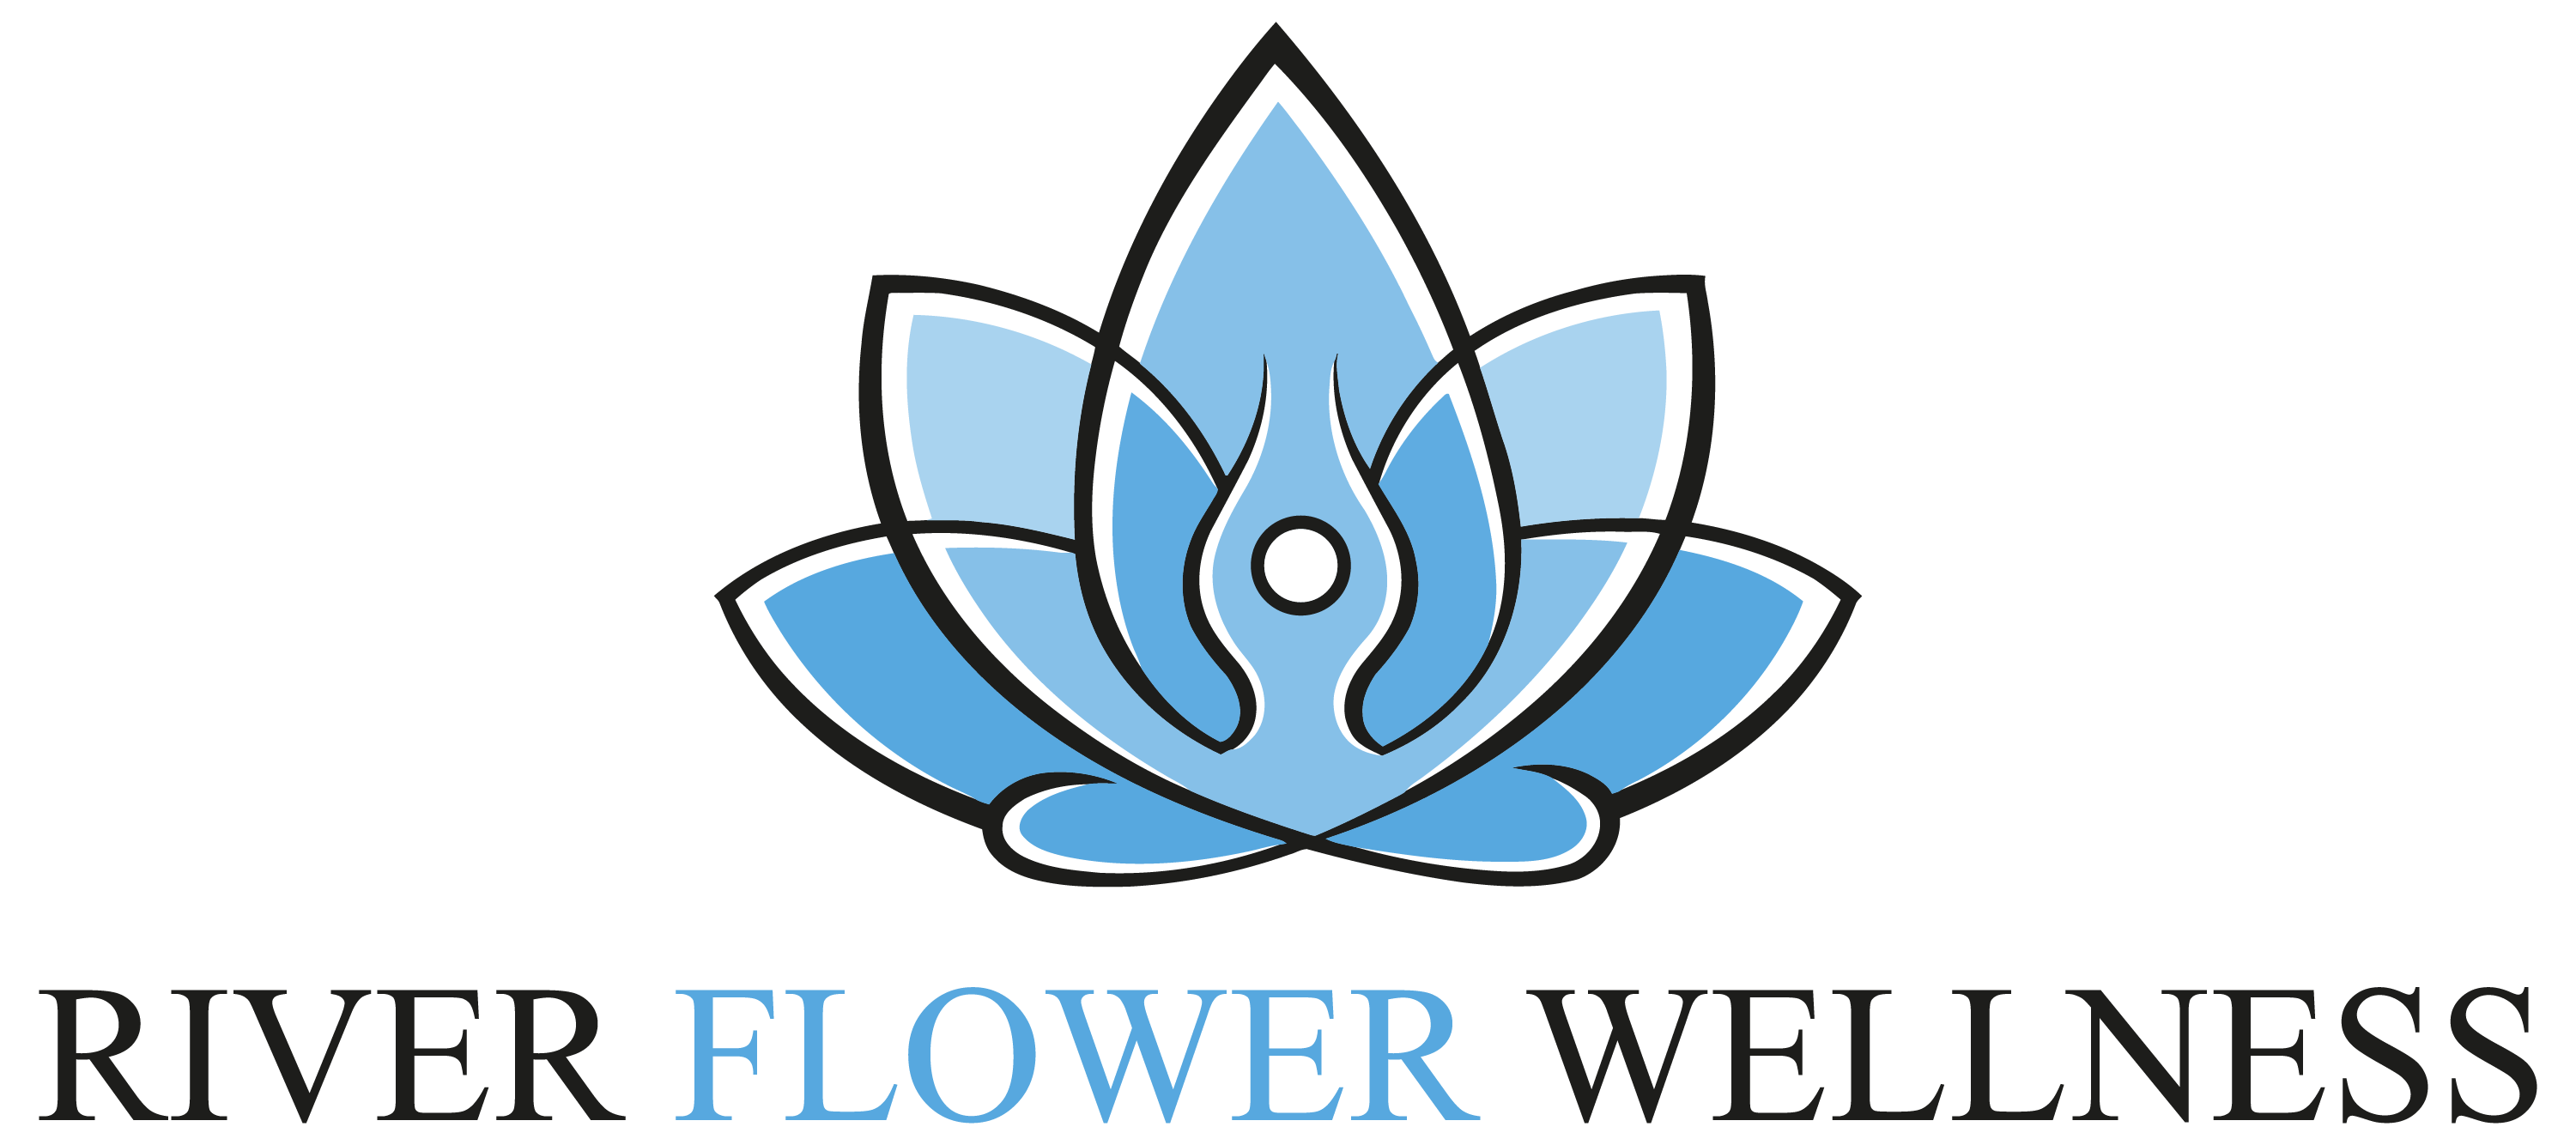 River Flower Wellness